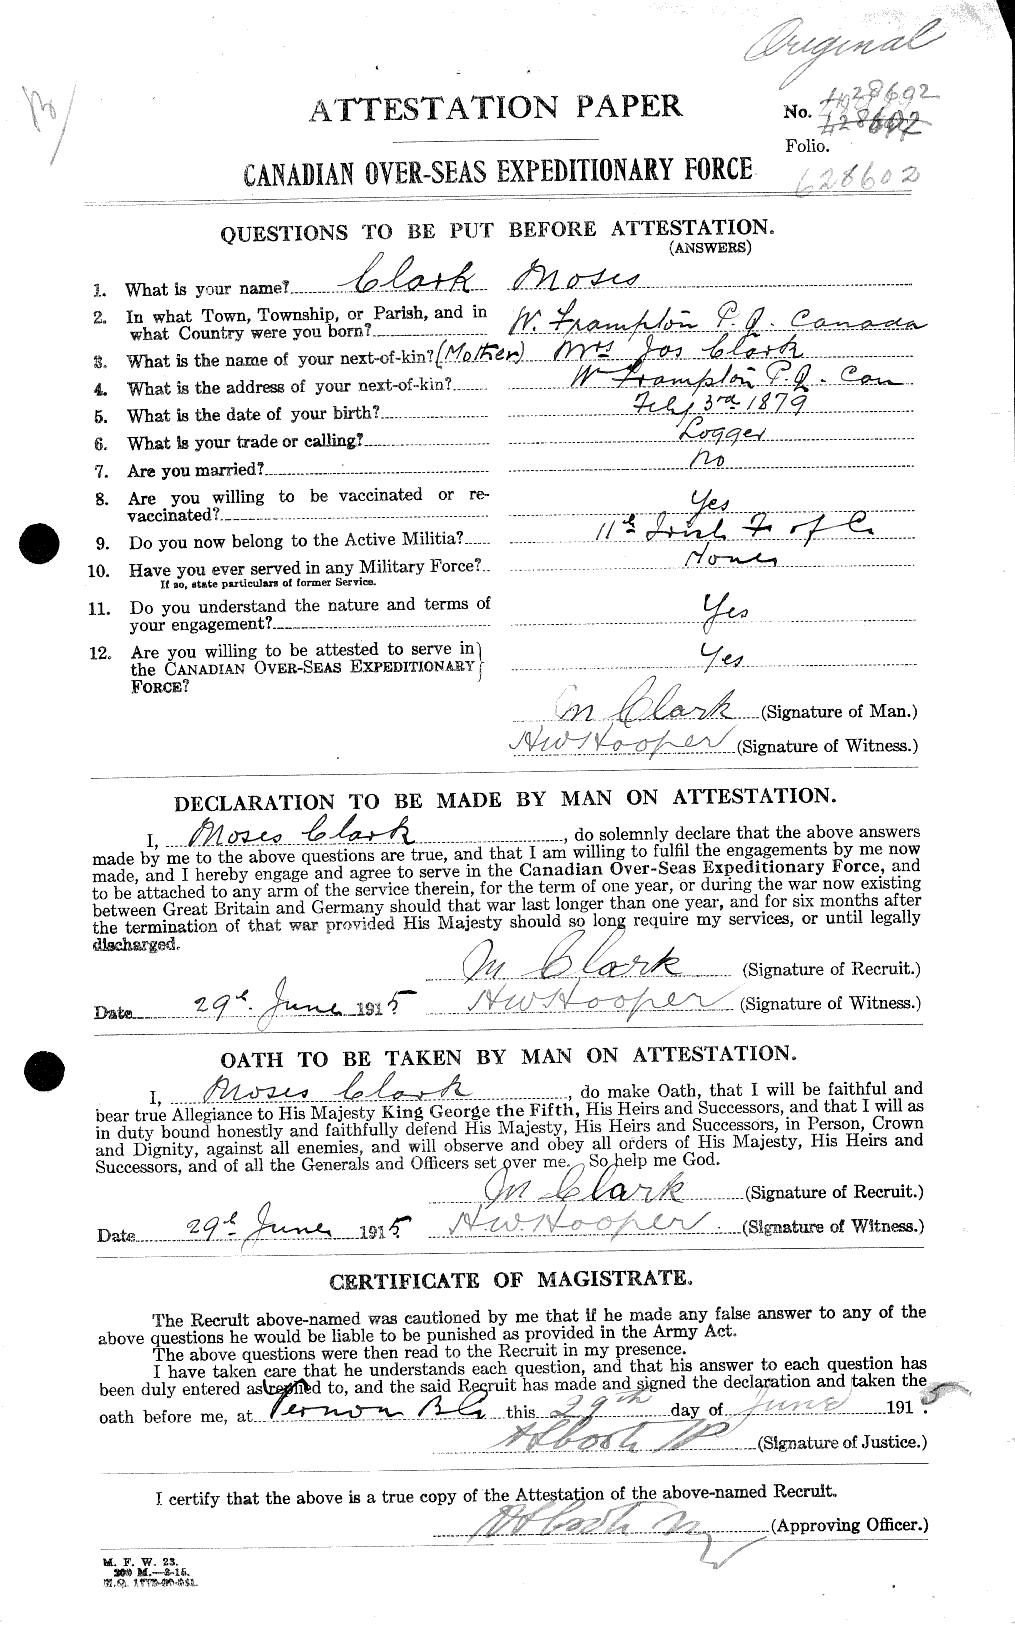 Dossiers du Personnel de la Première Guerre mondiale - CEC 023453a